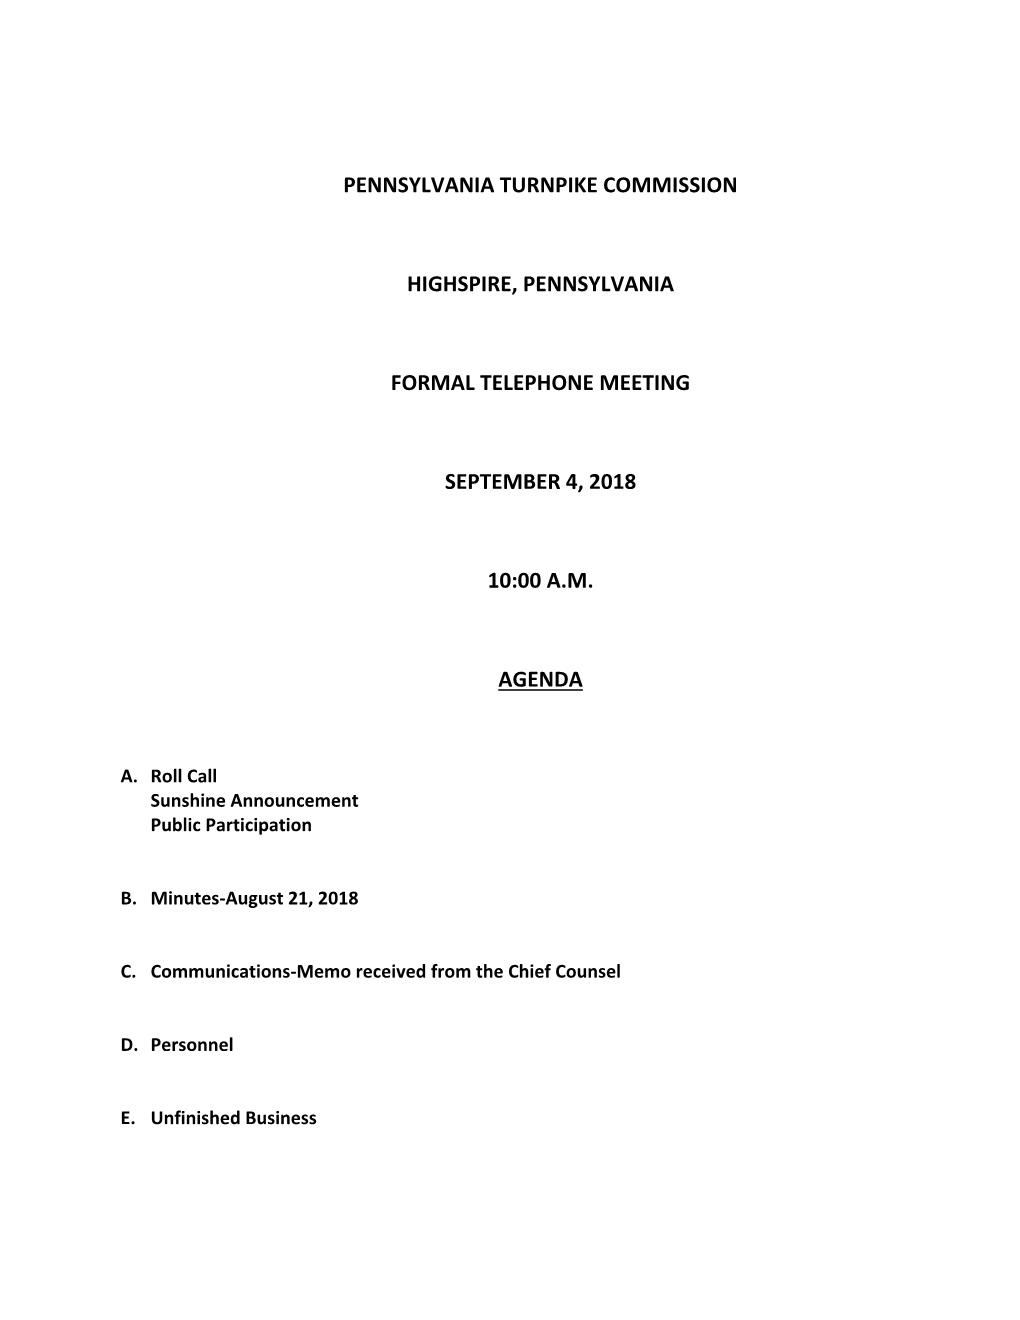 Meeting Agenda Final for September 04, 2018